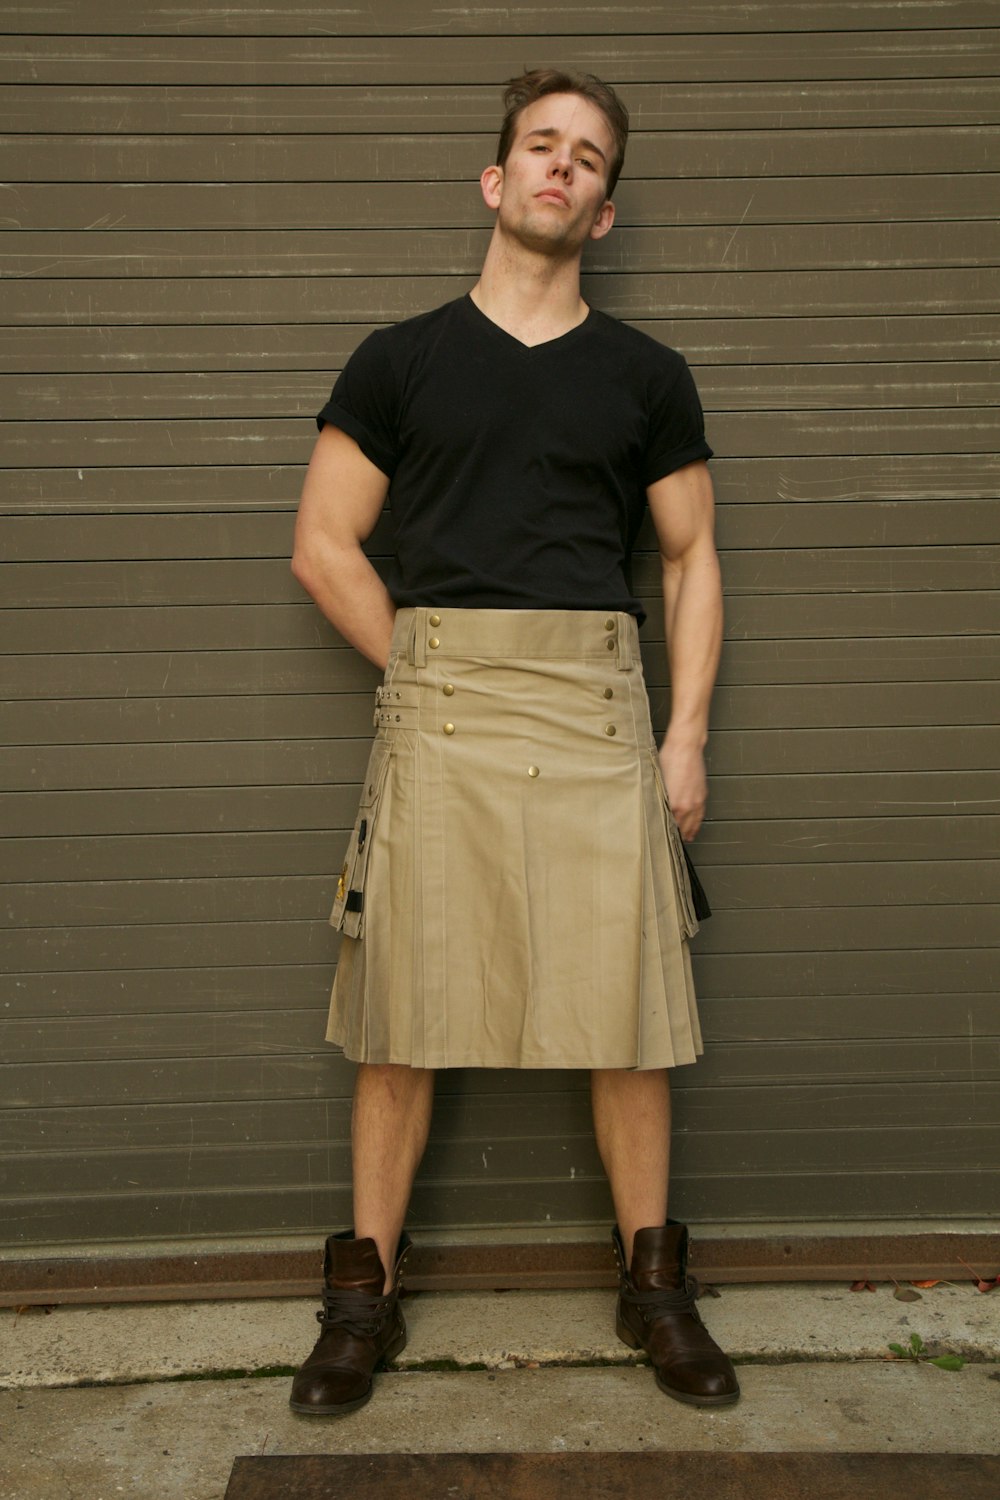 a man wearing a skirt